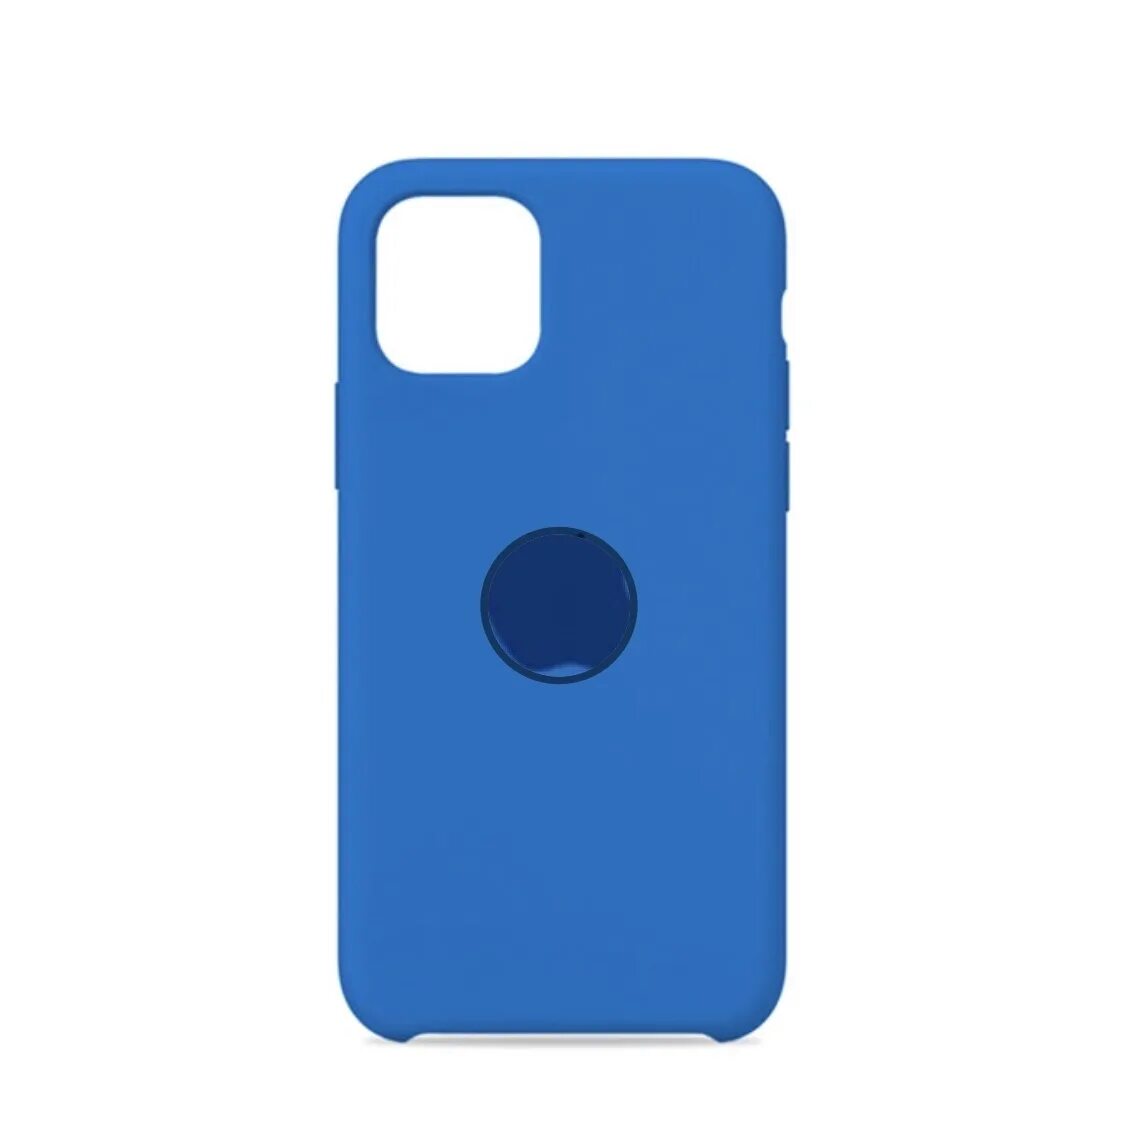 Купить синий телефон. Чехол VLP iphone 11 синий. Силиконовый чехол Silicone Case для iphone 11 голубой. Apple Silicone Case iphone 11 Pro. VLP Silicone Case 11 iphone темно зеленый.